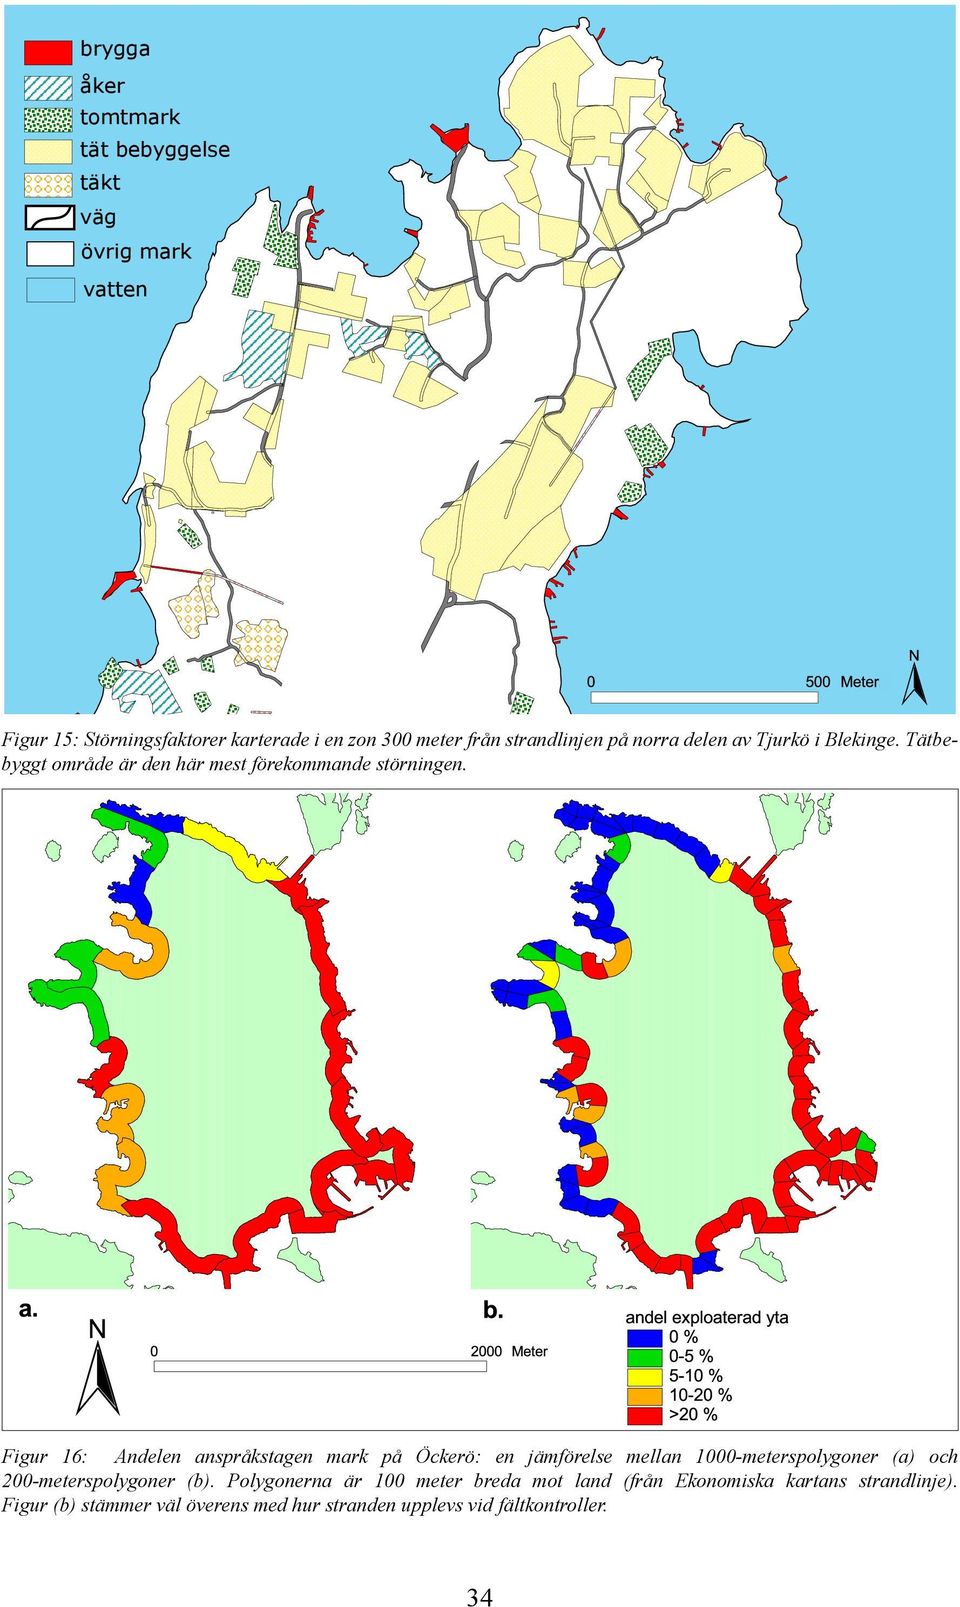 Figur 16: Andelen anspråkstagen mark på Öckerö: en jämförelse mellan 1000-meterspolygoner (a) och 200-meterspolygoner (b).